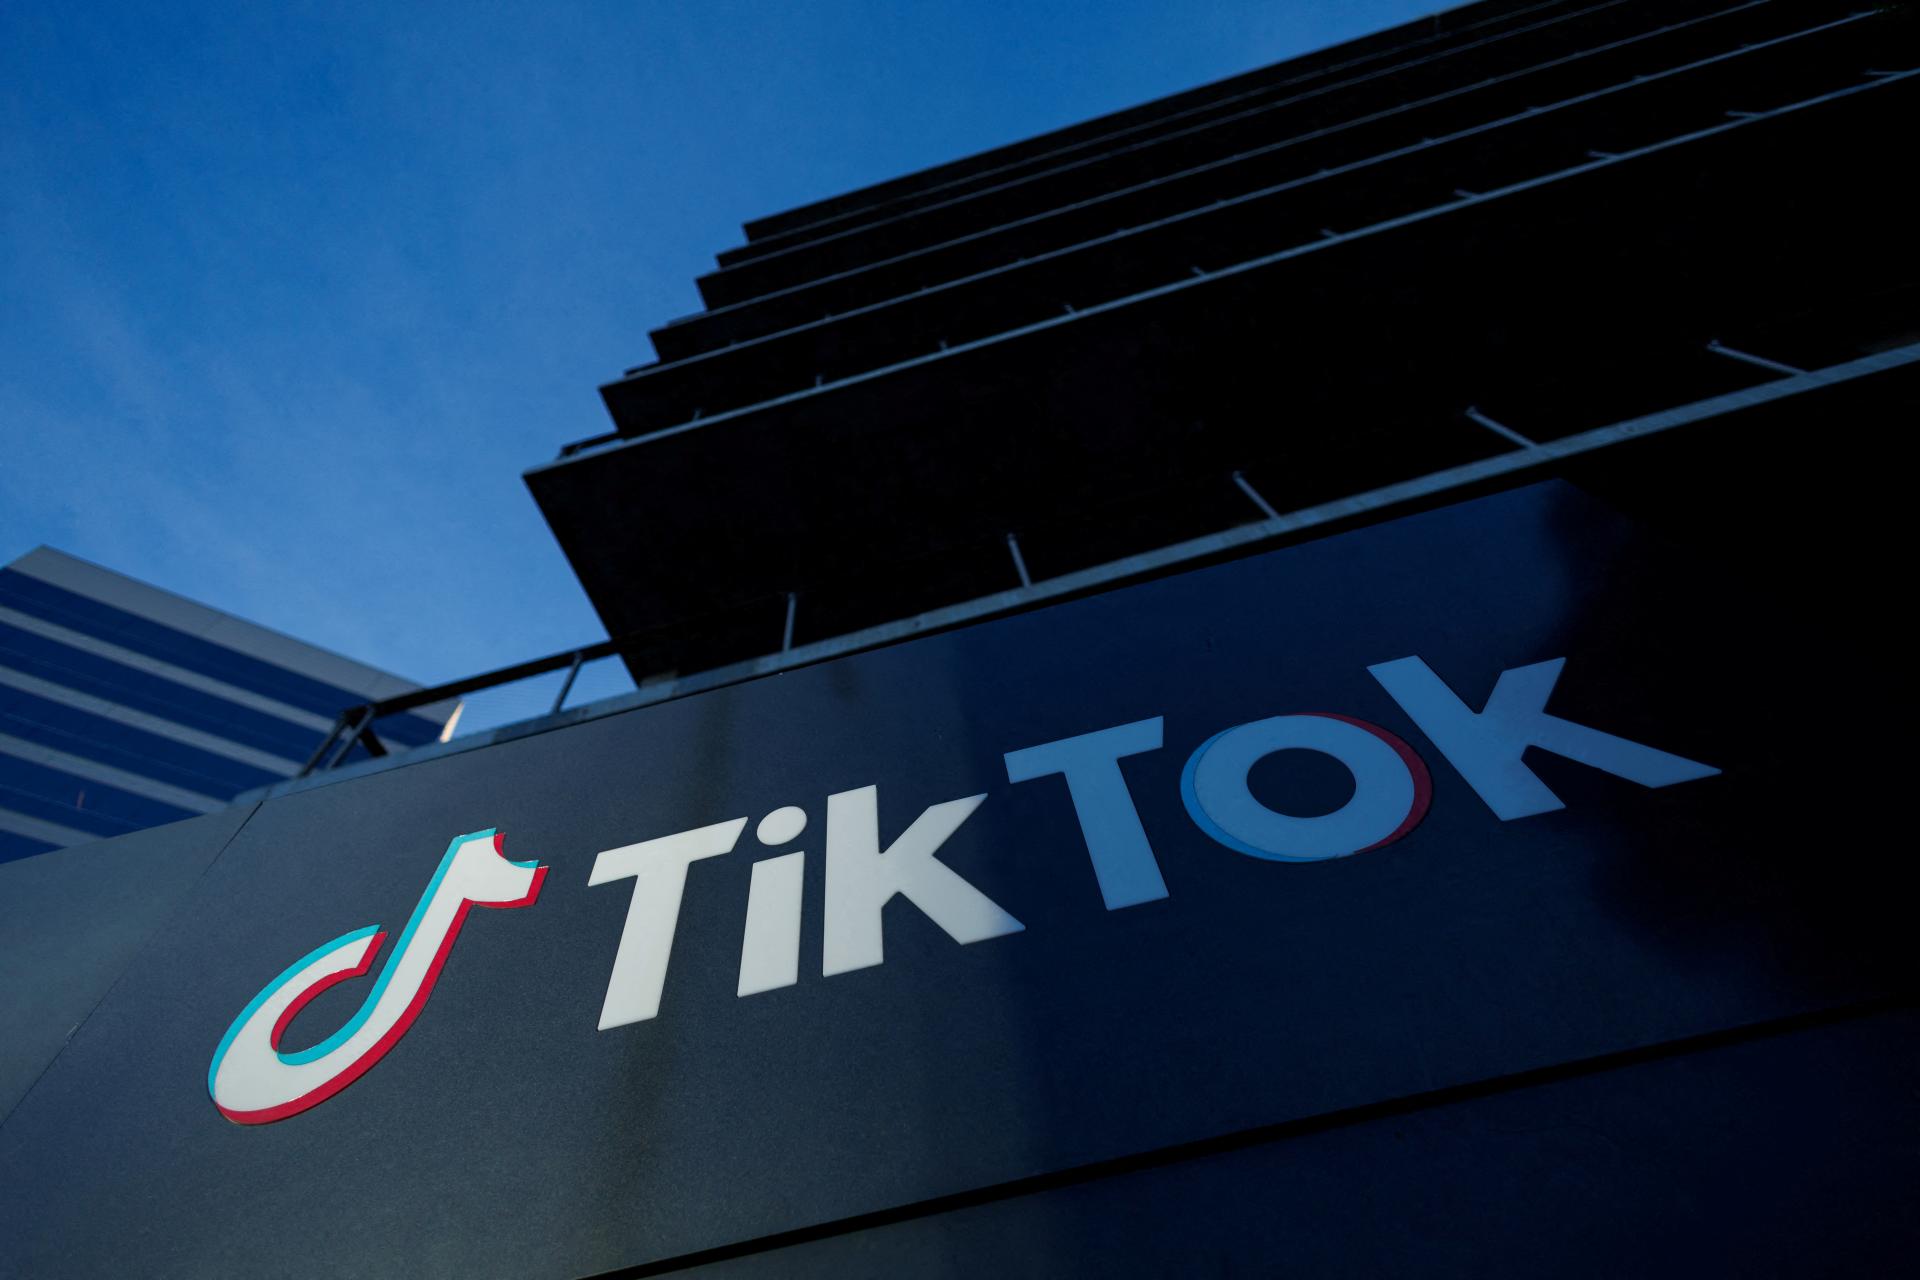 Sieť TikTok predložila Bruselu správu o rizikách spojených s novou aplikáciou. Užívatelia dostávajú úlohy